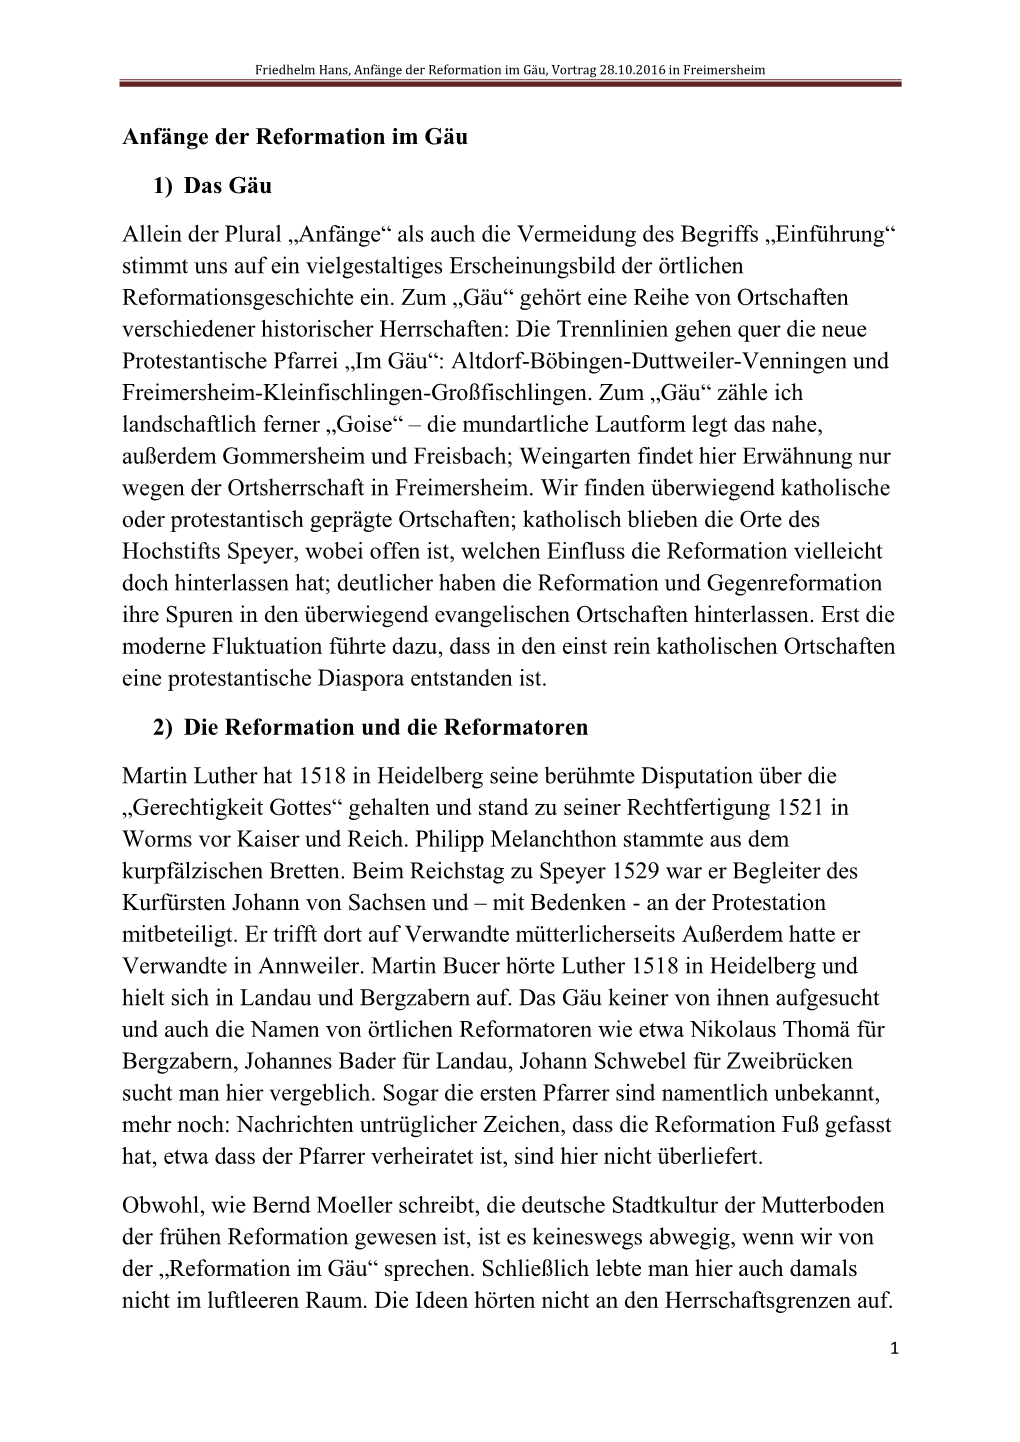 Friedhelm Hans, Anfänge Der Reformation Im Gäu, Vortrag 28.10.2016 in Freimersheim